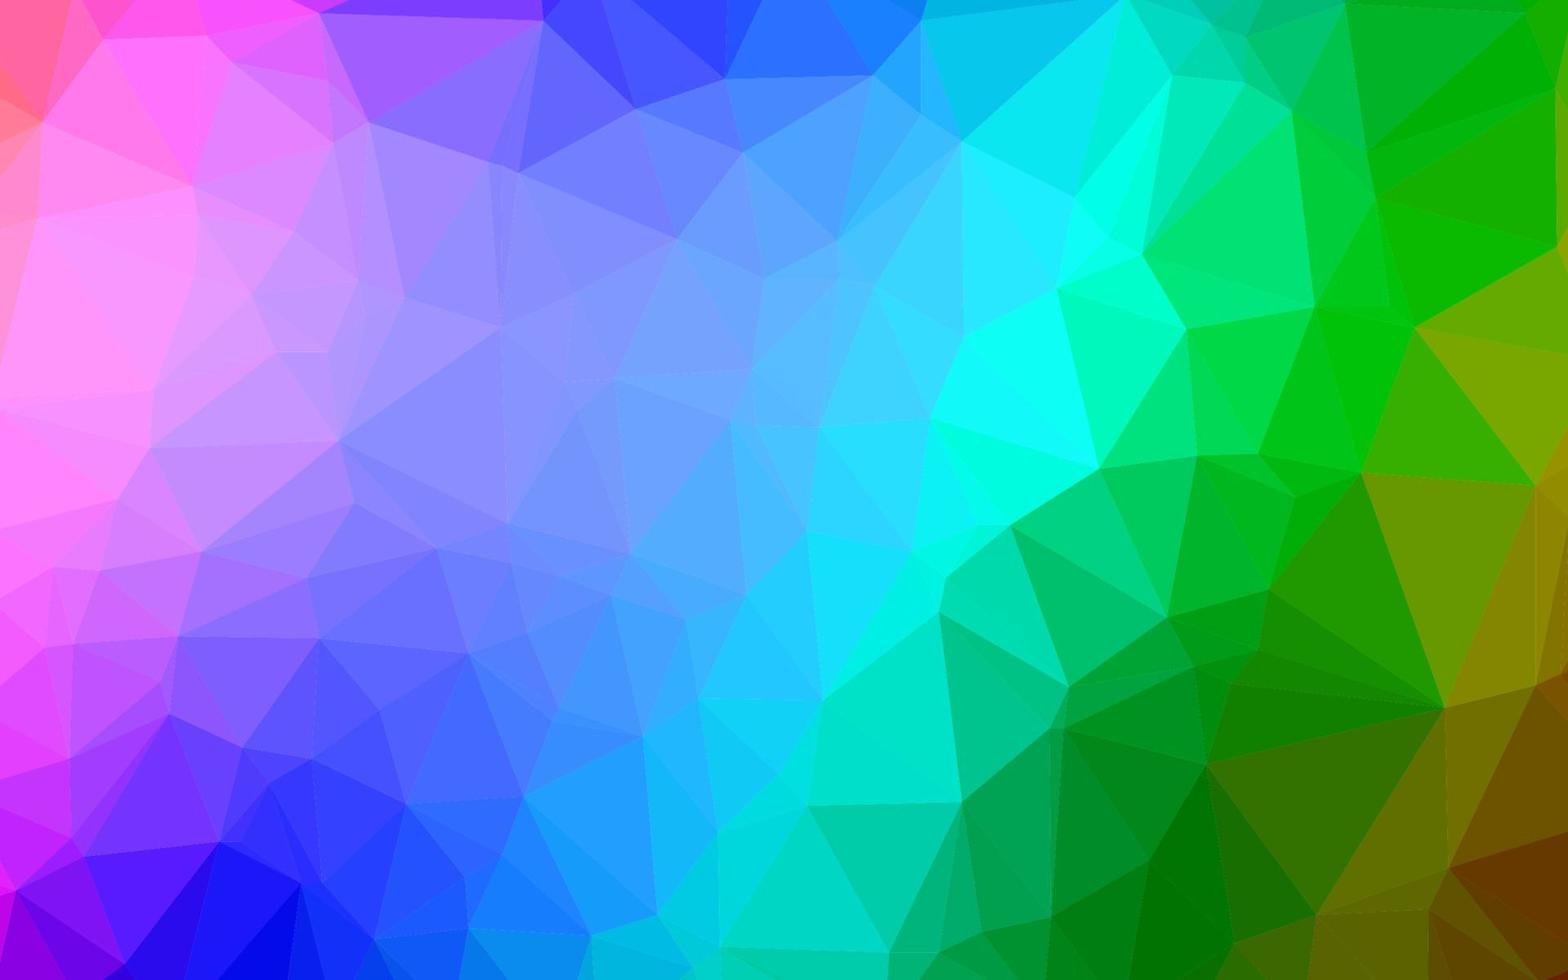 multicolore chiaro, sfondo poligonale vettoriale arcobaleno.